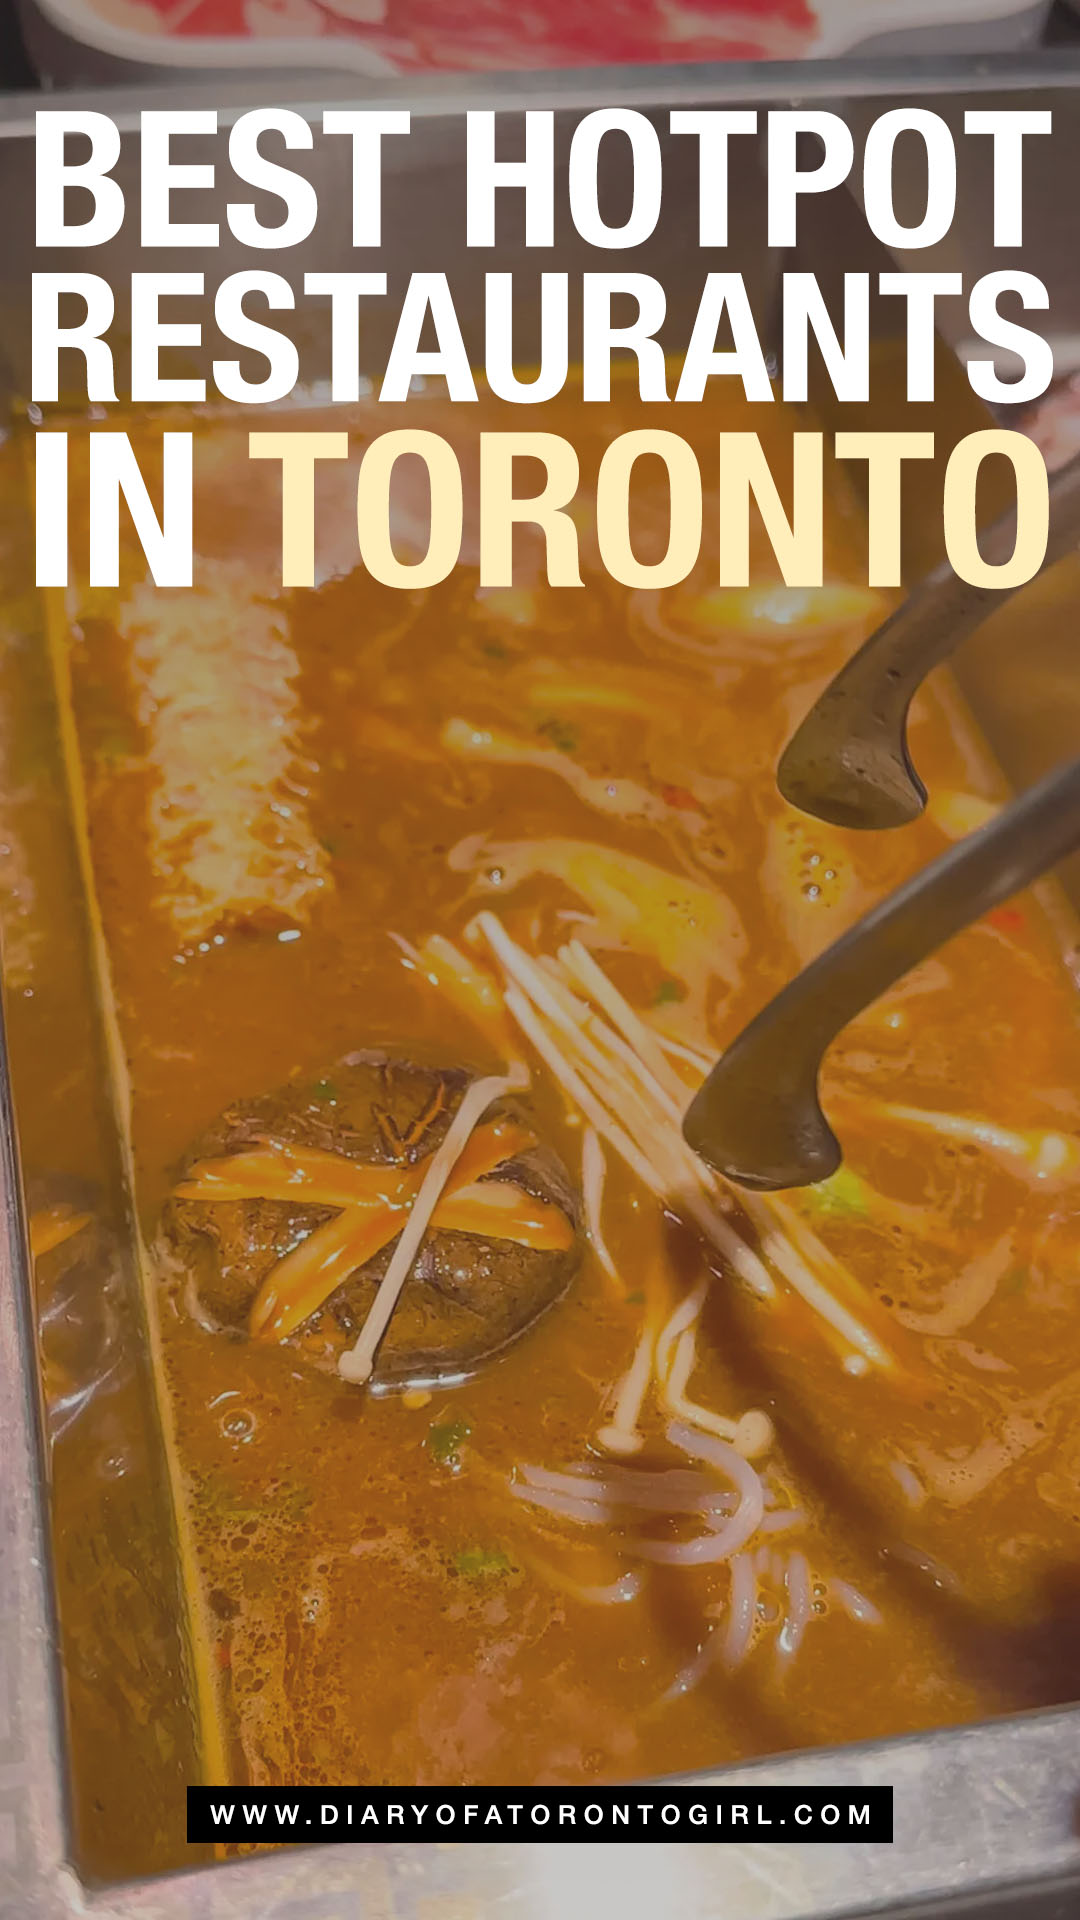 Best hot pot restaurants in Toronto